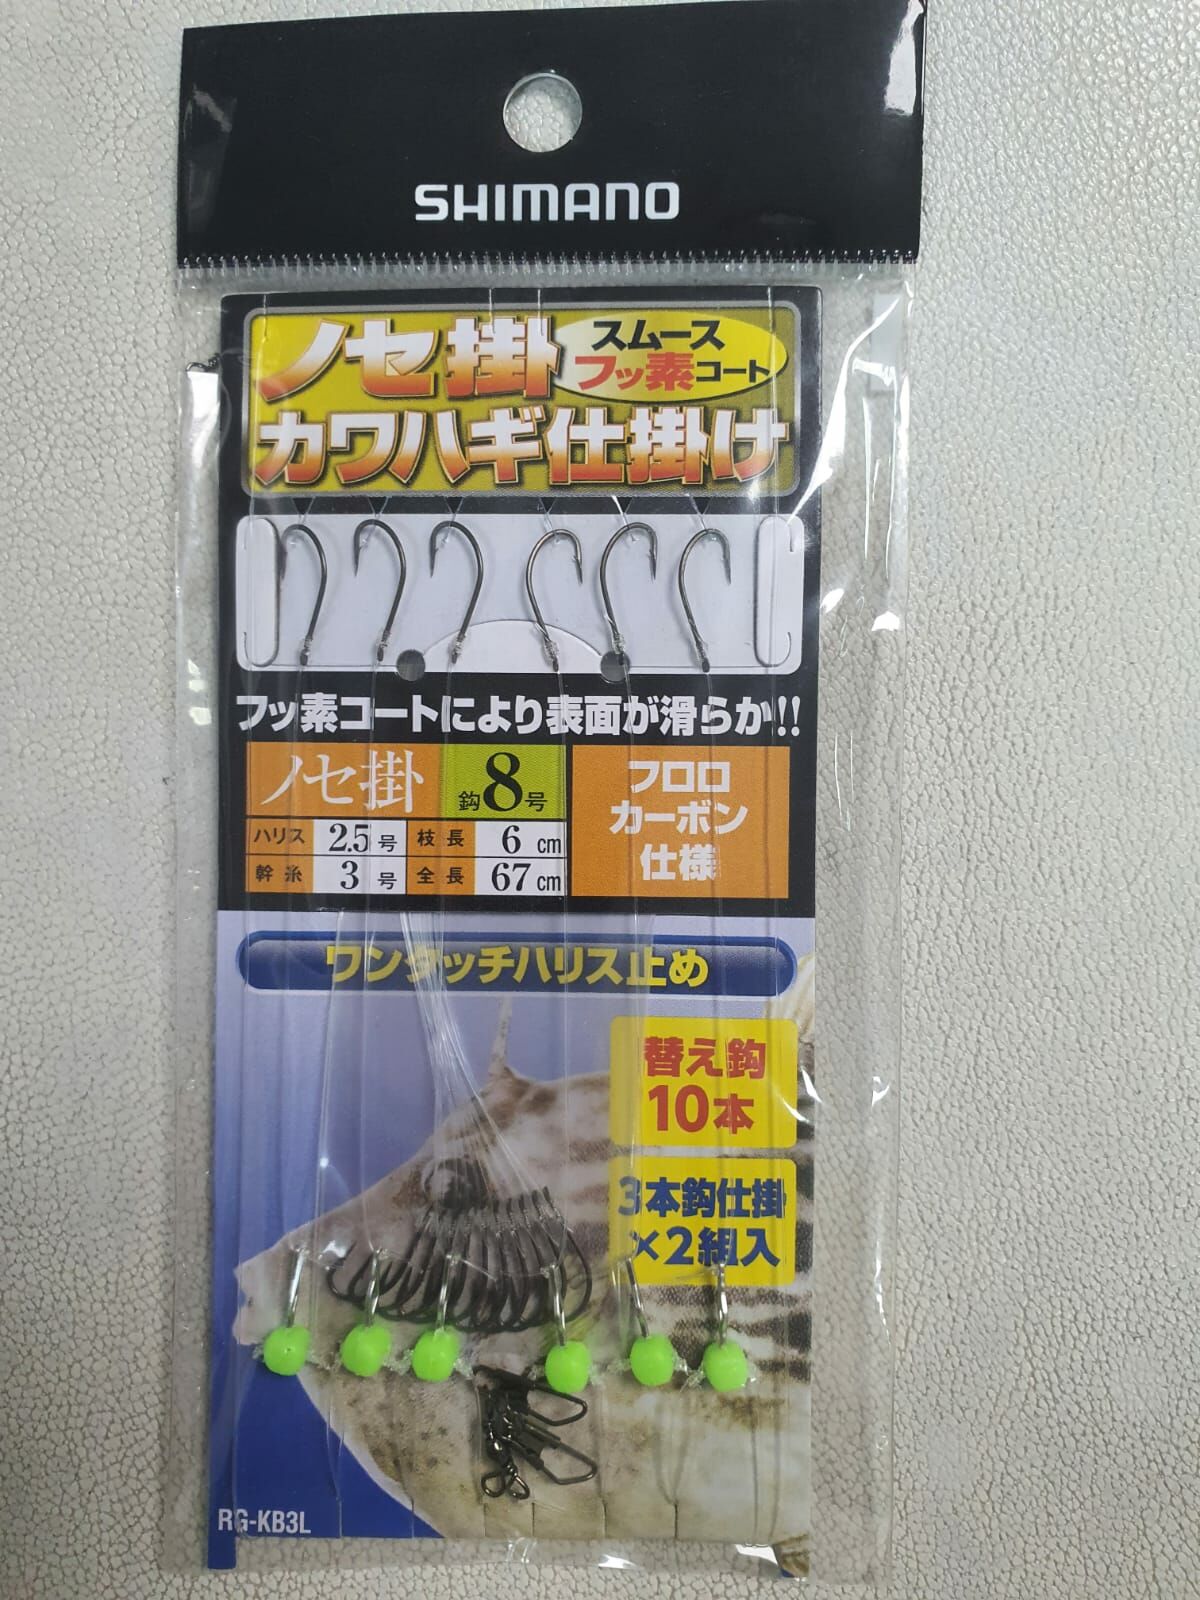 Shimano 3 İğneli Fosfor Boncuklu Yemli Dip Takımı